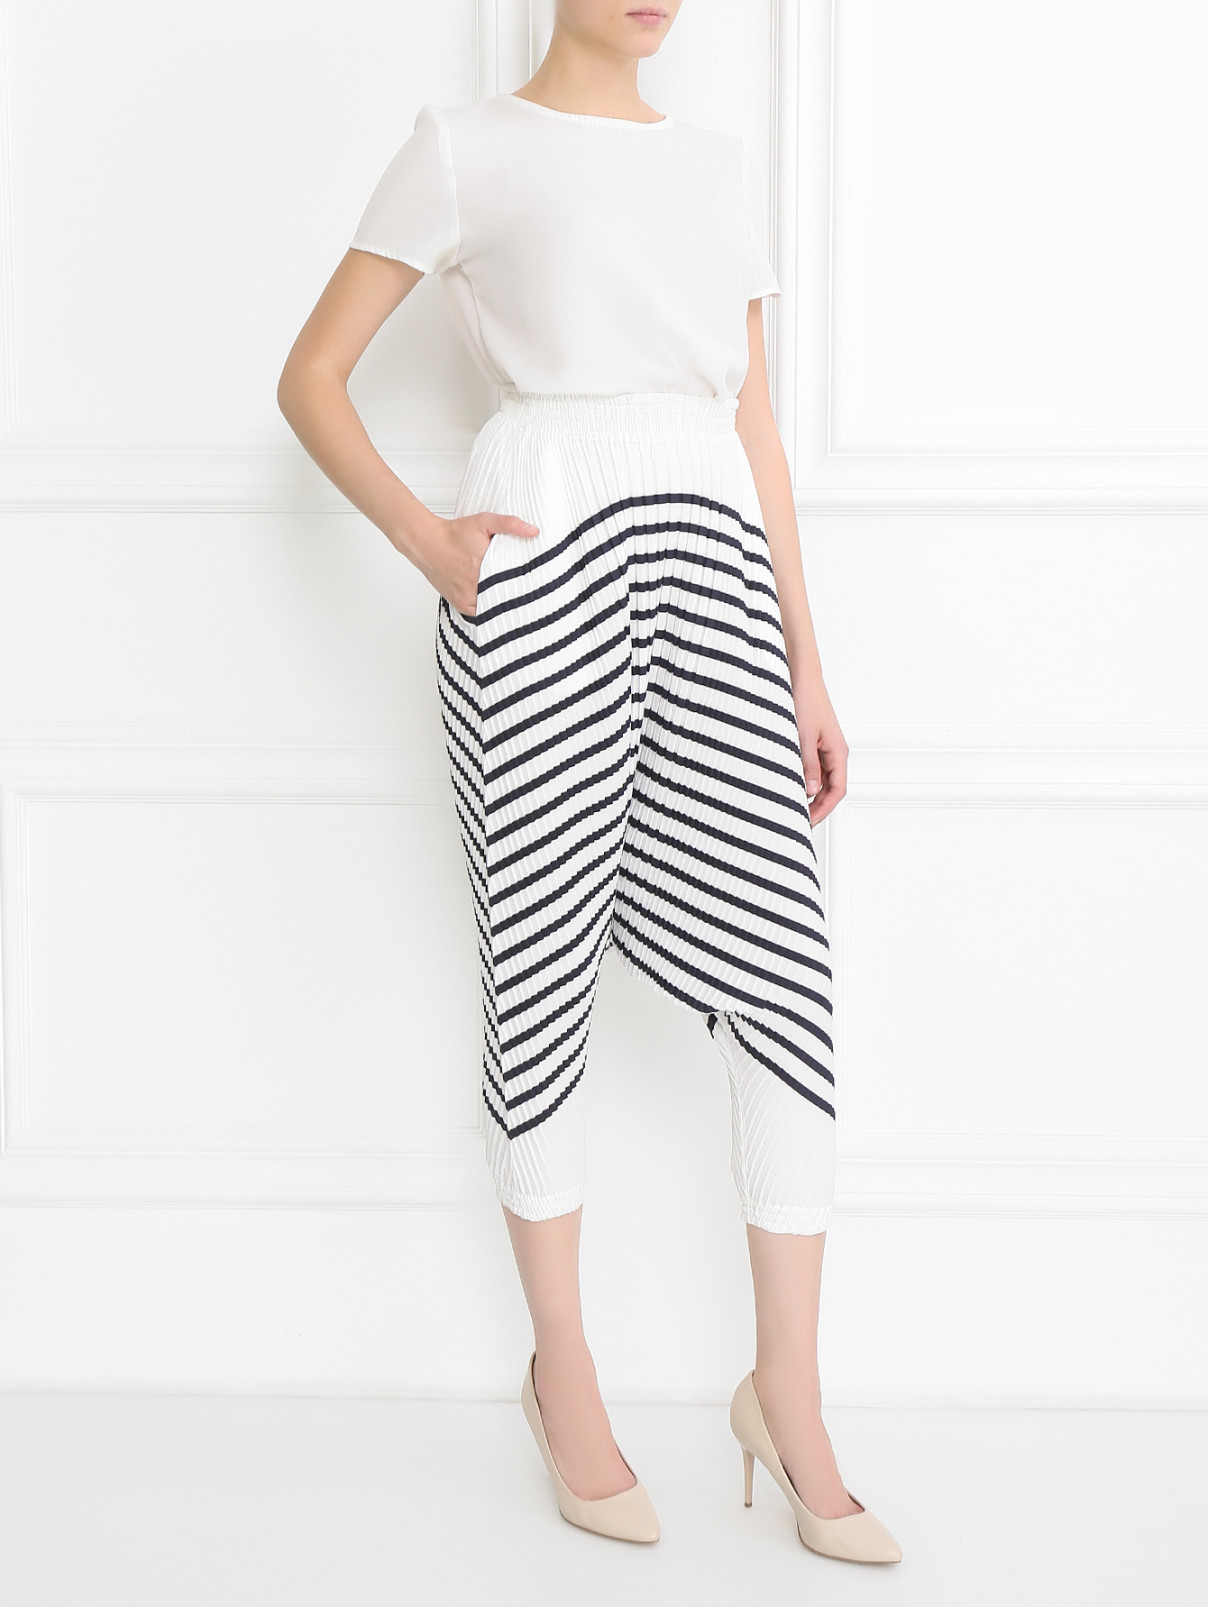 Плиссированные брюки свободного кроя с узором "полоска" Jean Paul Gaultier  –  Модель Общий вид  – Цвет:  Белый